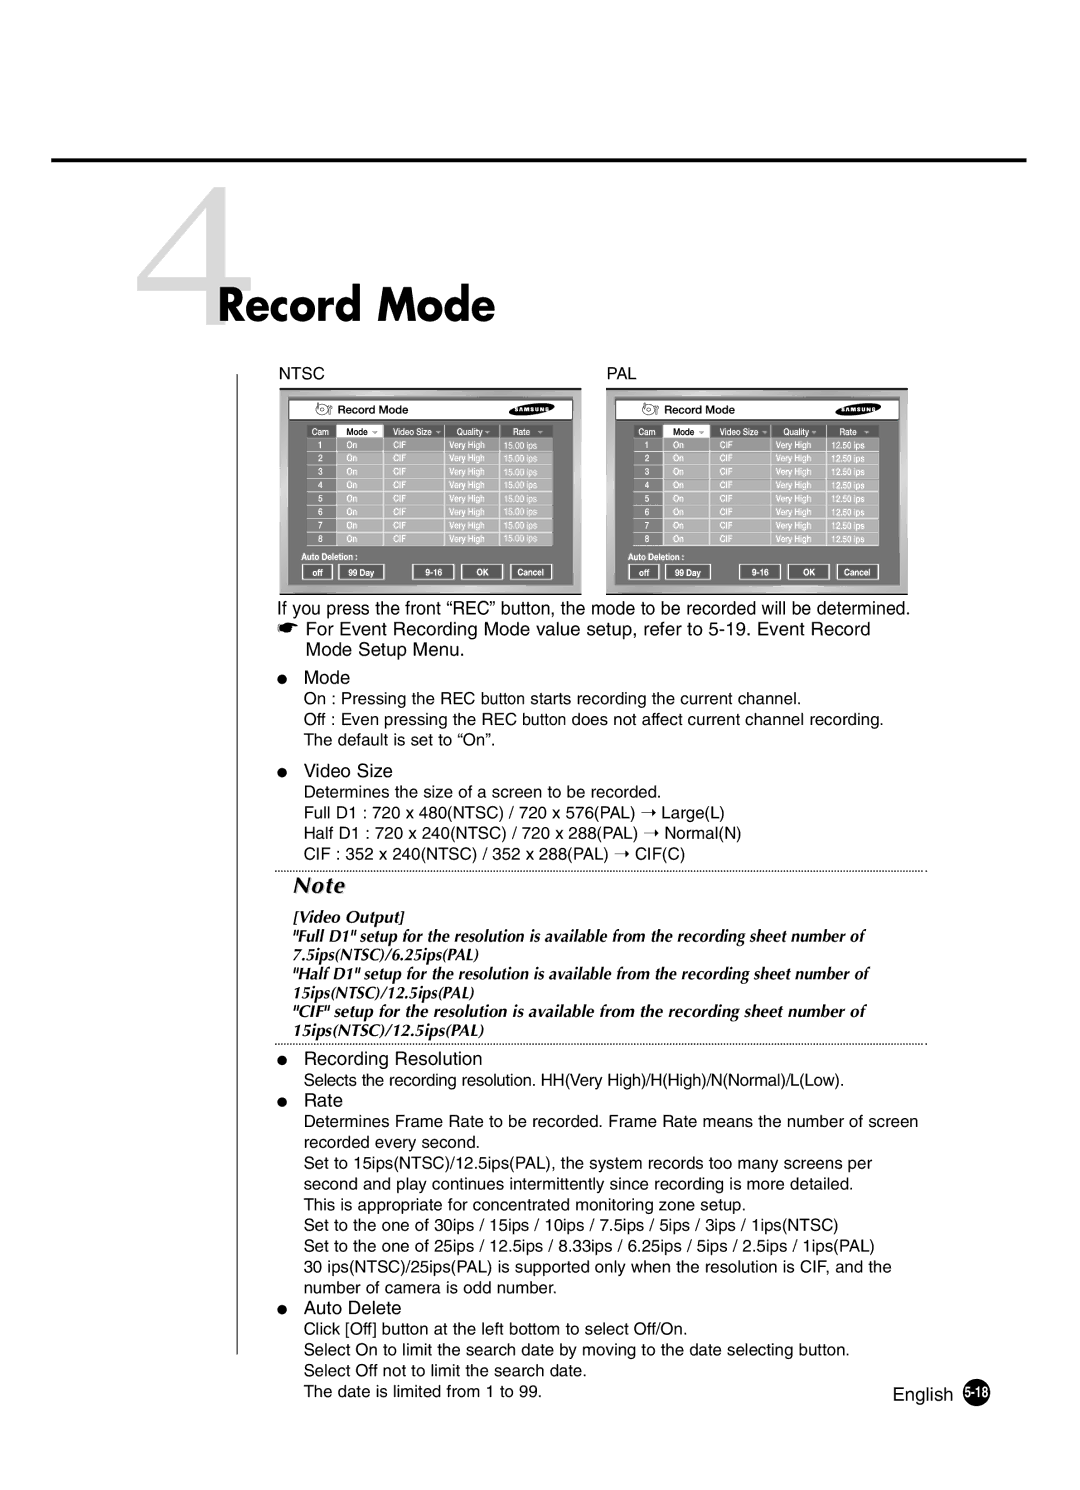 Samsung SHR-4160P manual 4Record Mode, Video Size, Recording Resolution, Rate, Auto Delete 